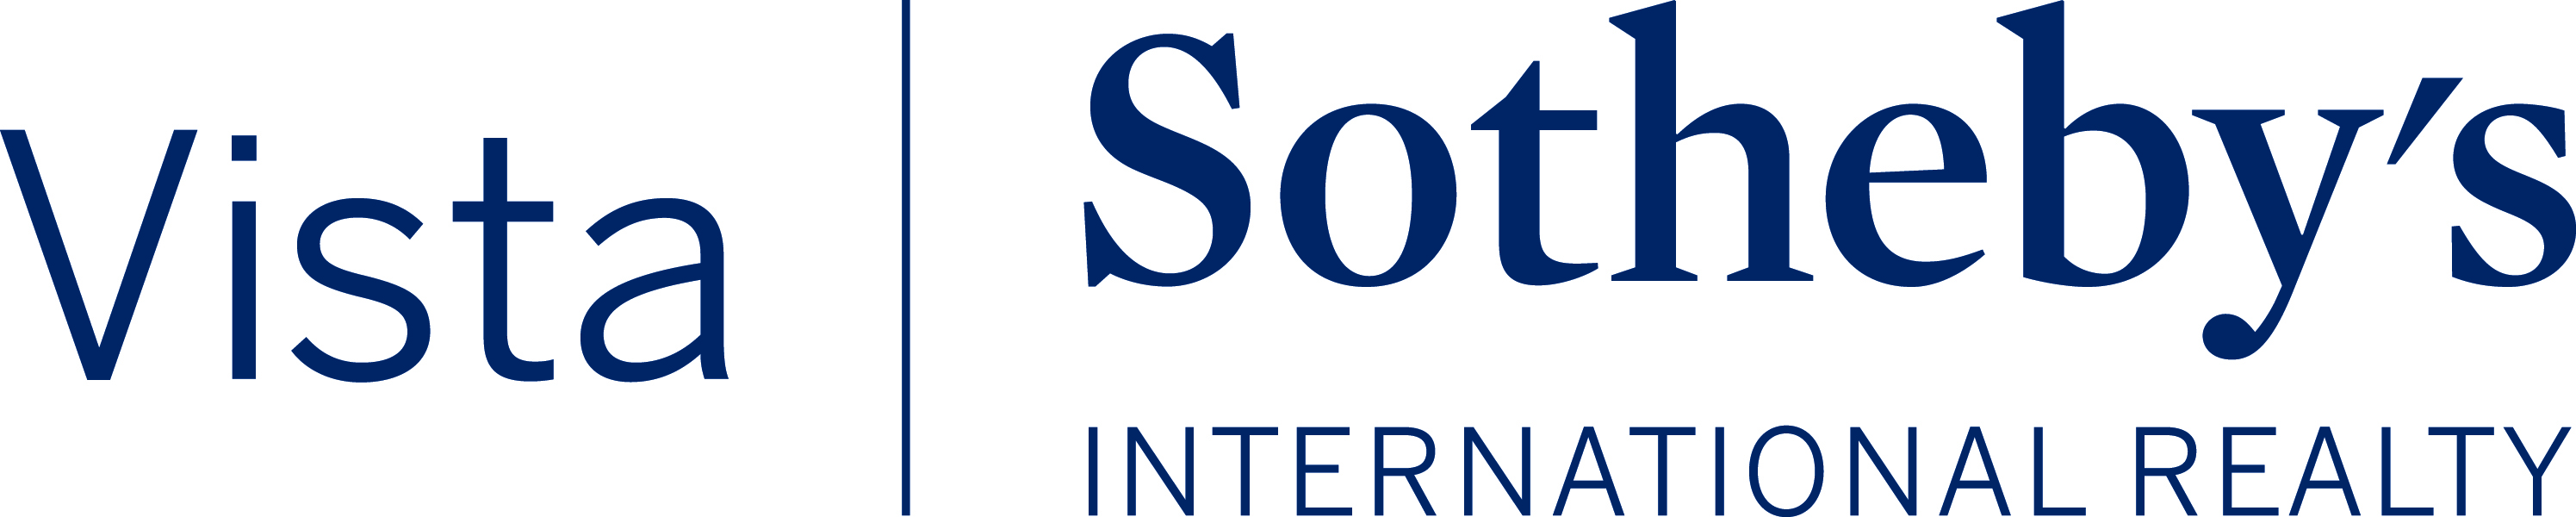 vista sotheby's logo